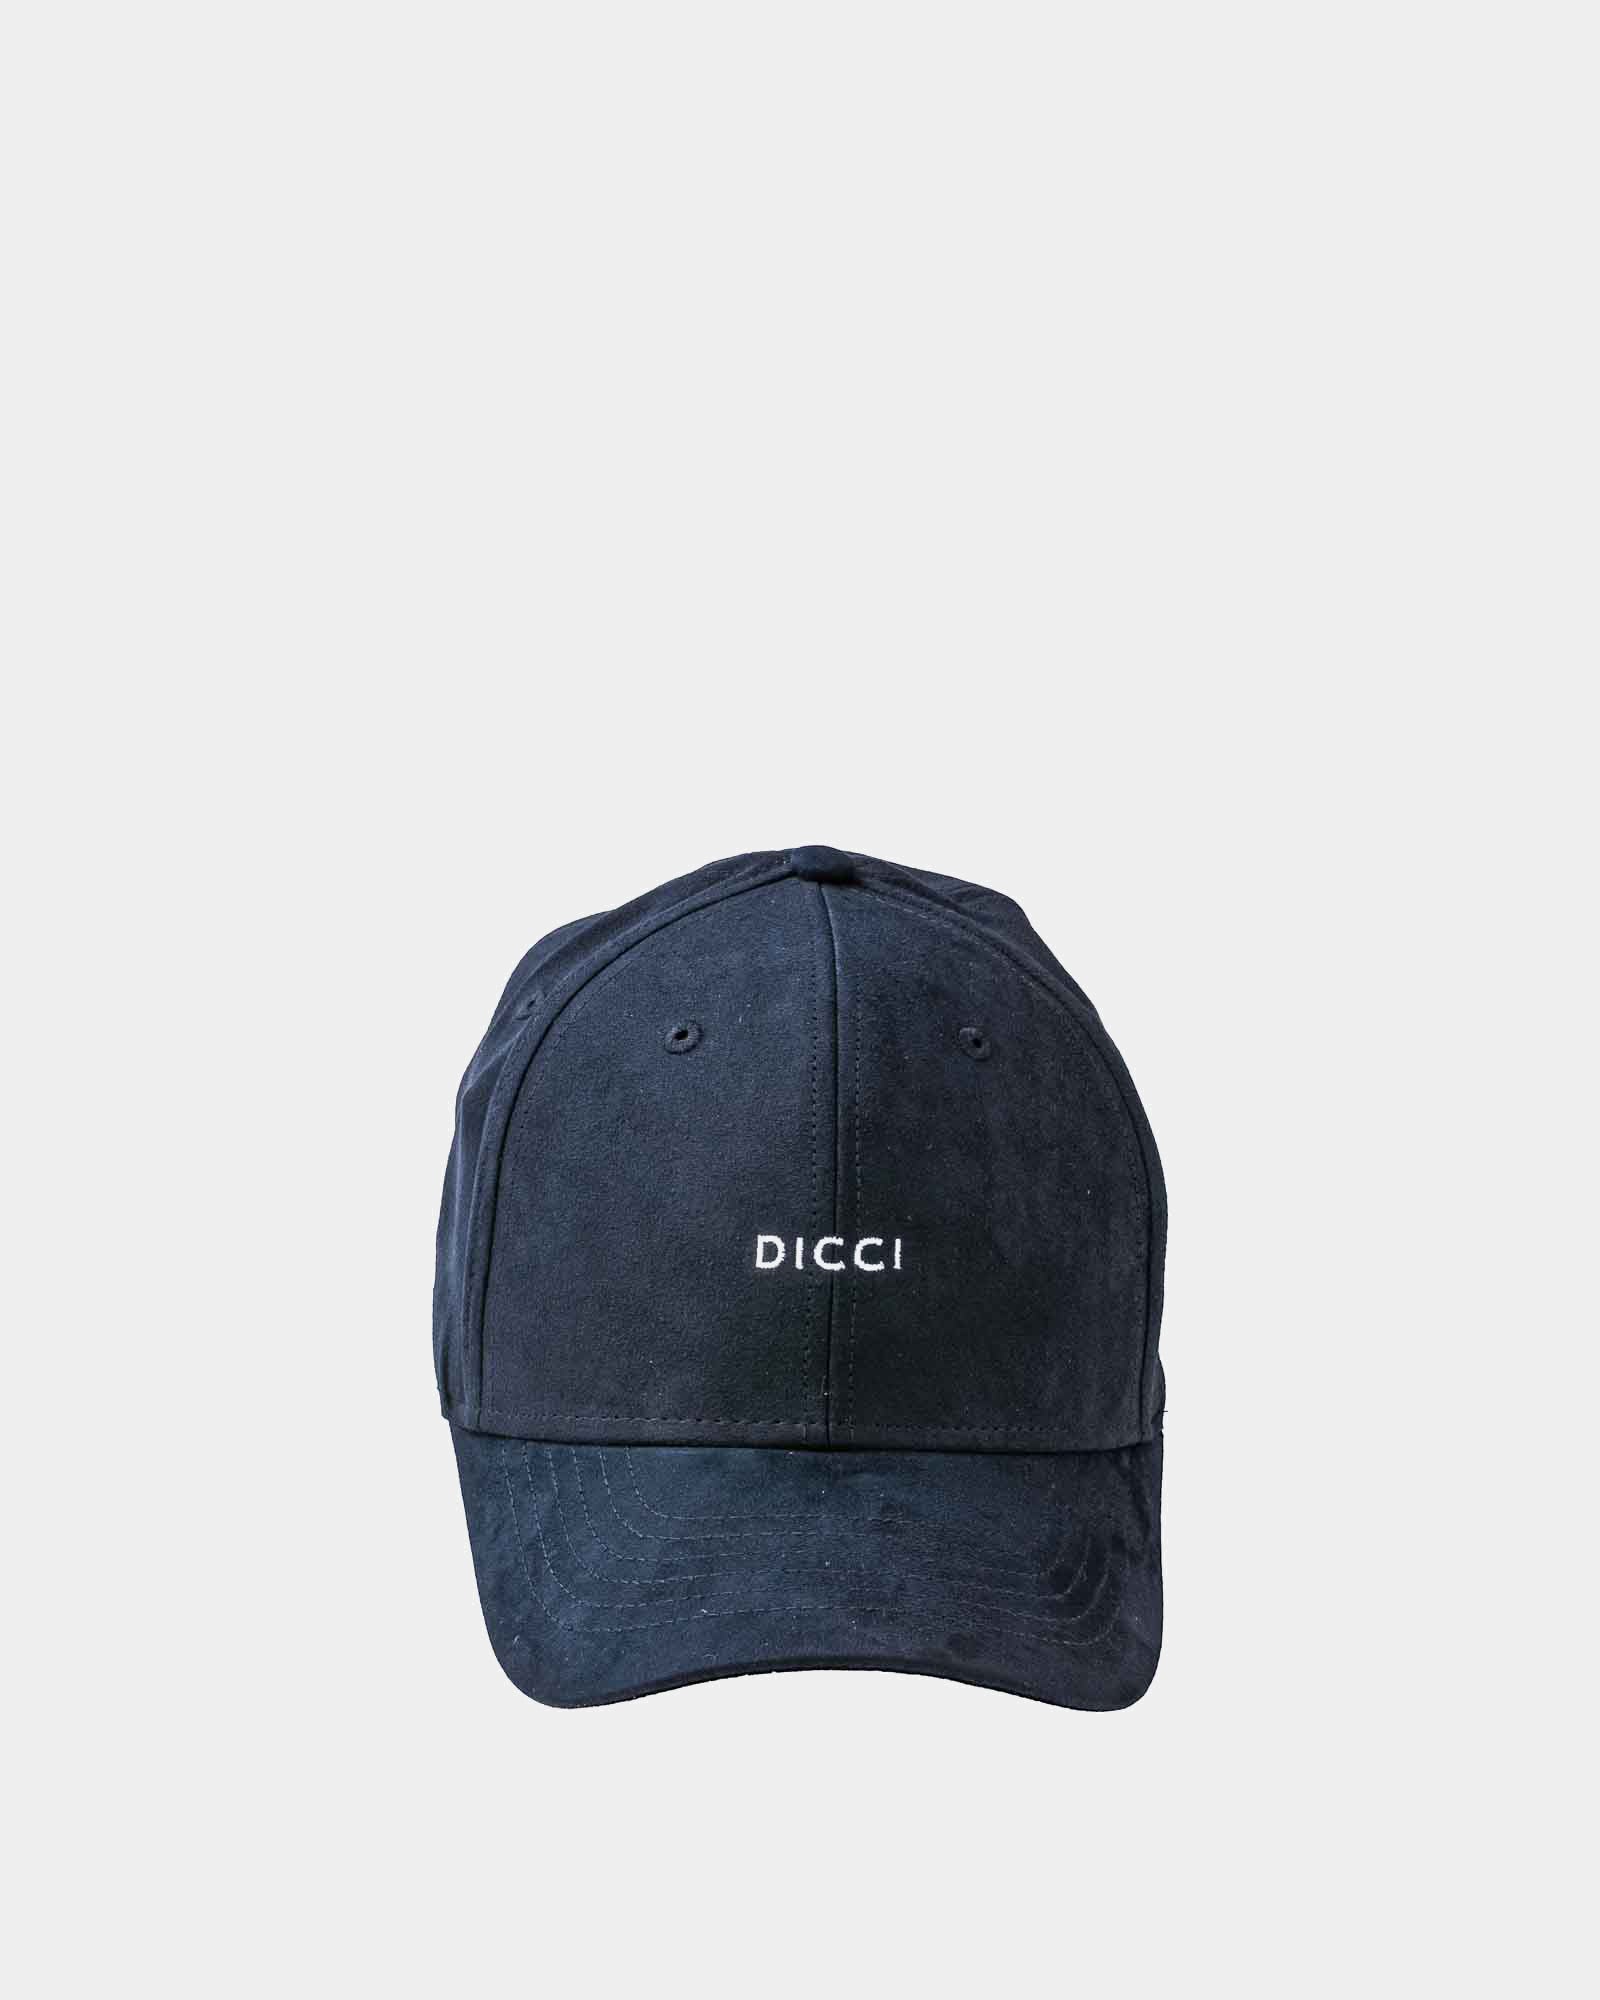 Dicci Navy Cap - Caps for Men and Woman - Dicci